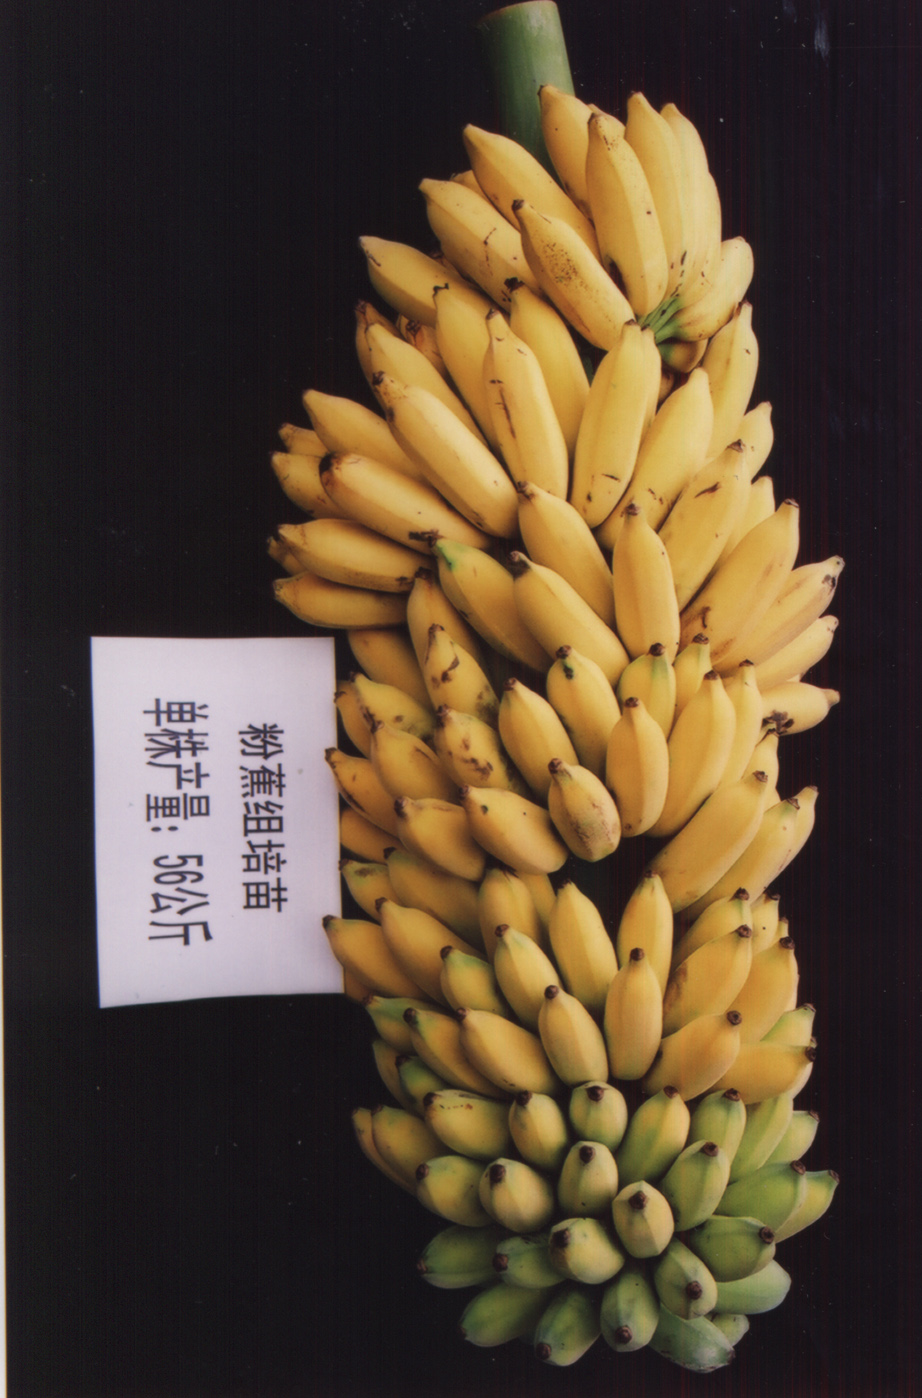 供应香蕉苗电话 供应优质香蕉苗 供应香蕉优质种苗 优质苹果粉供应